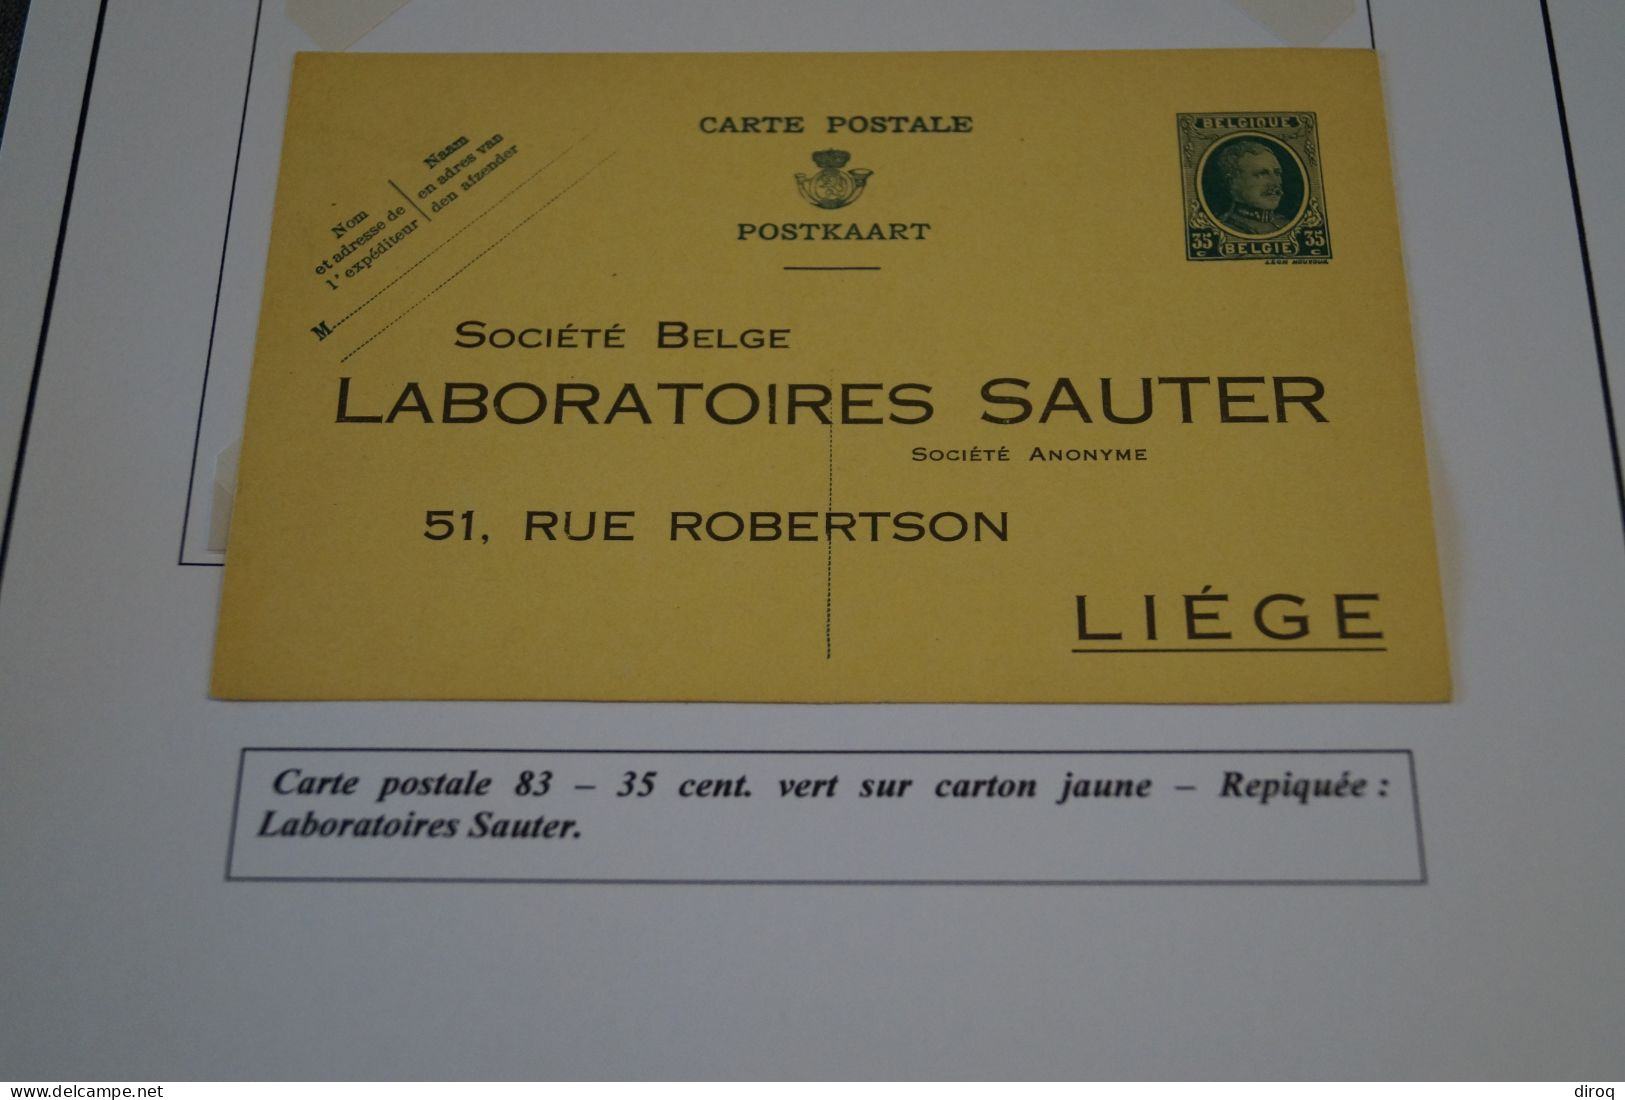 Type Albert I - Houyoux 1928,carte Publicitaire Labo Sauter Liège,carte N° 83,état Neuf Pour Collection - Cartes Postales 1909-1934